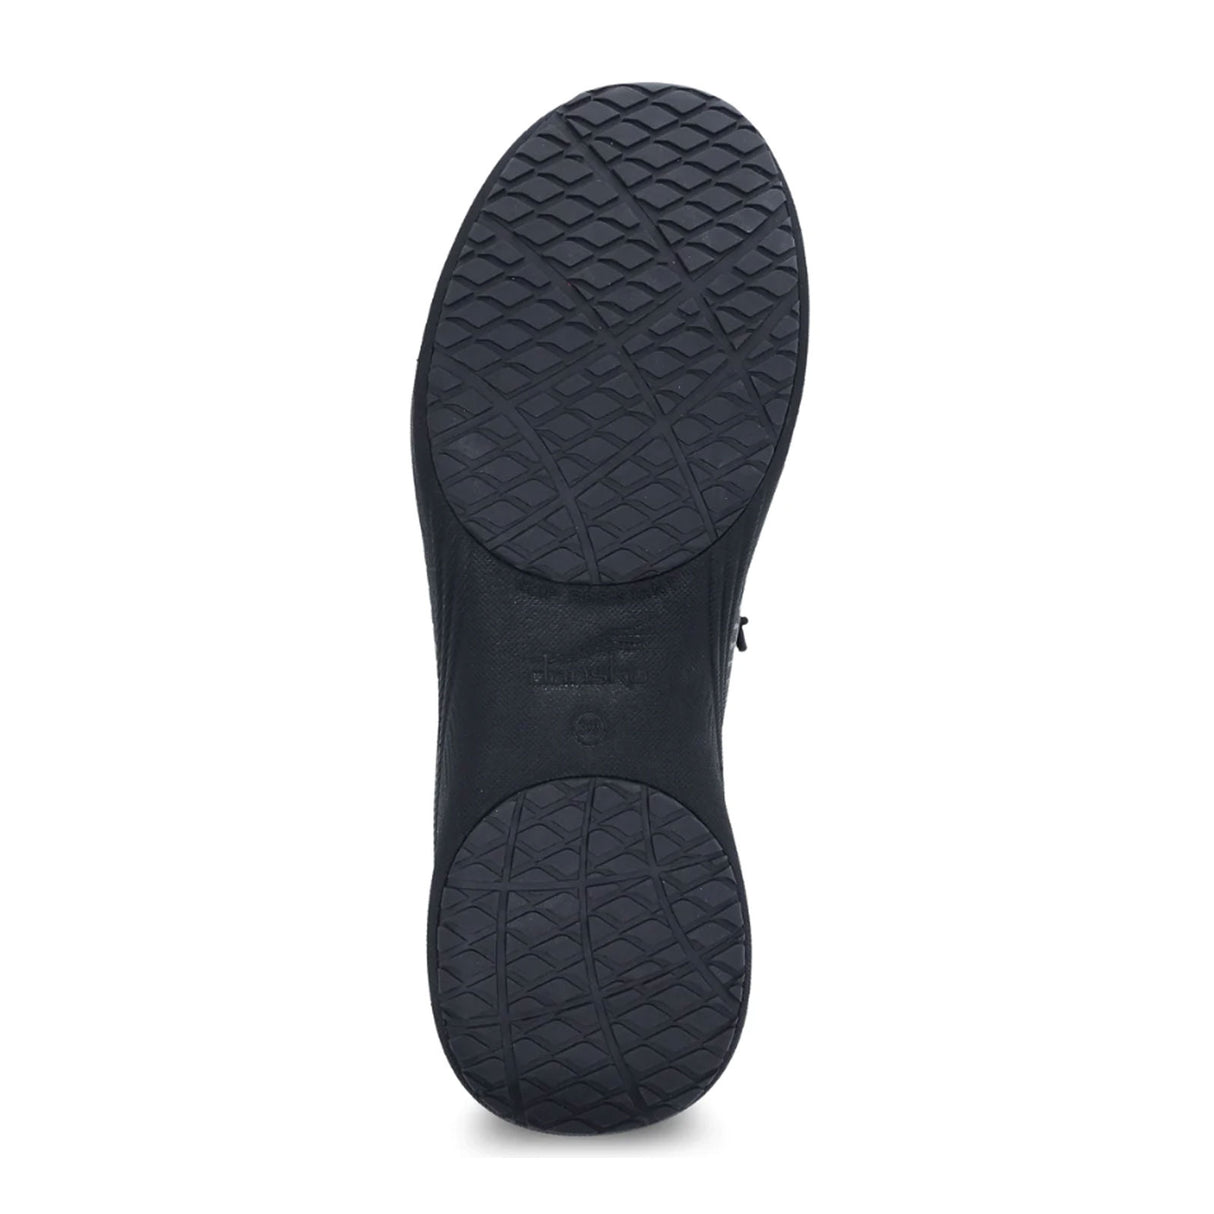 Dansko Marlee Slip On Sneaker (Women) - Black Mesh Athletic - Casual - Slip On - The Heel Shoe Fitters